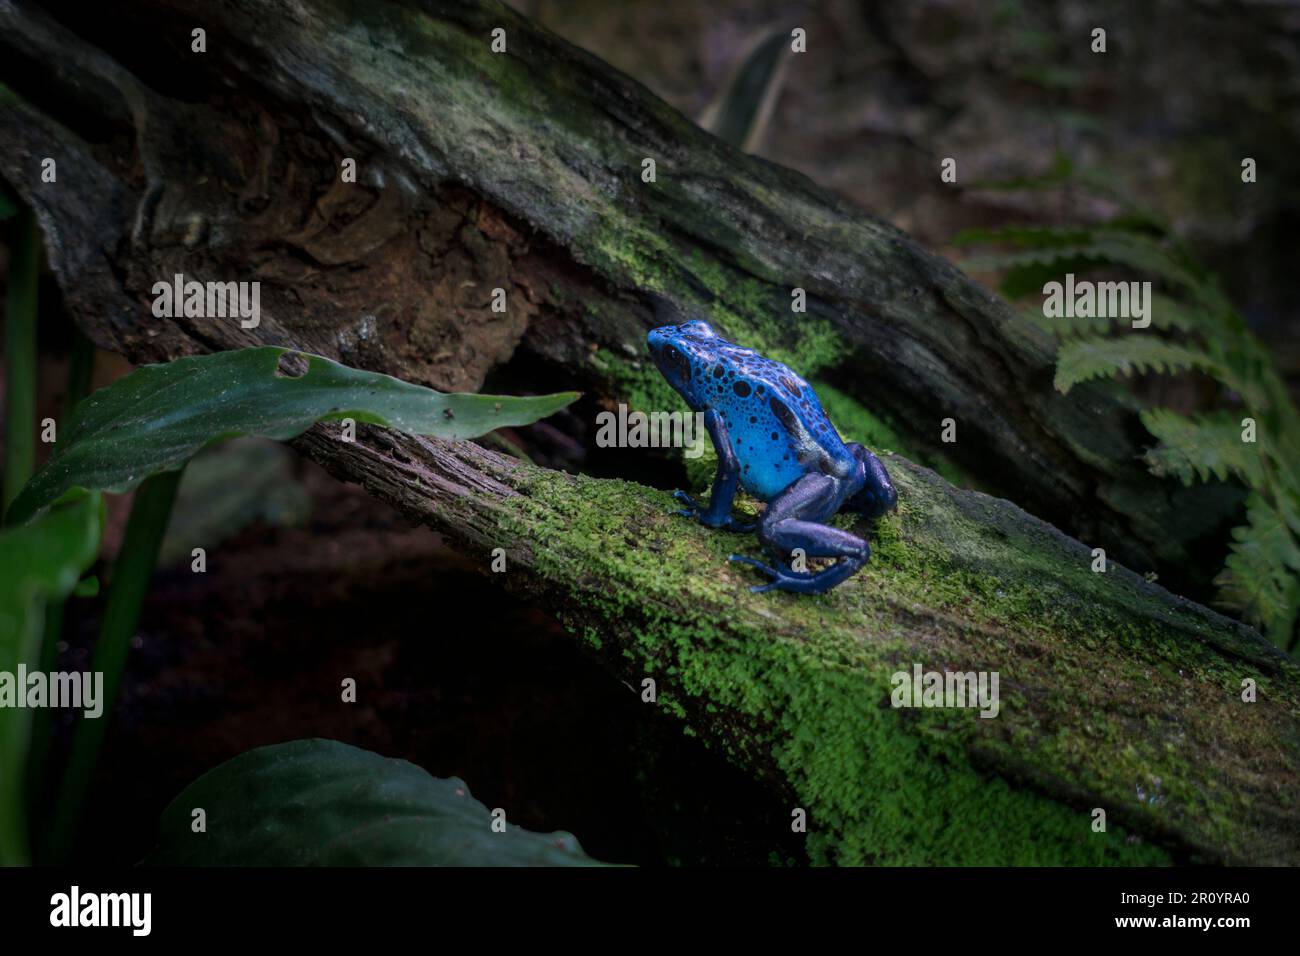 Rana azul veneno dardo / rana azul veneno flecha (Dendrobates tinctorius azureus) nativa de las selvas tropicales del sur de Surinam y el norte de Brasil Foto de stock